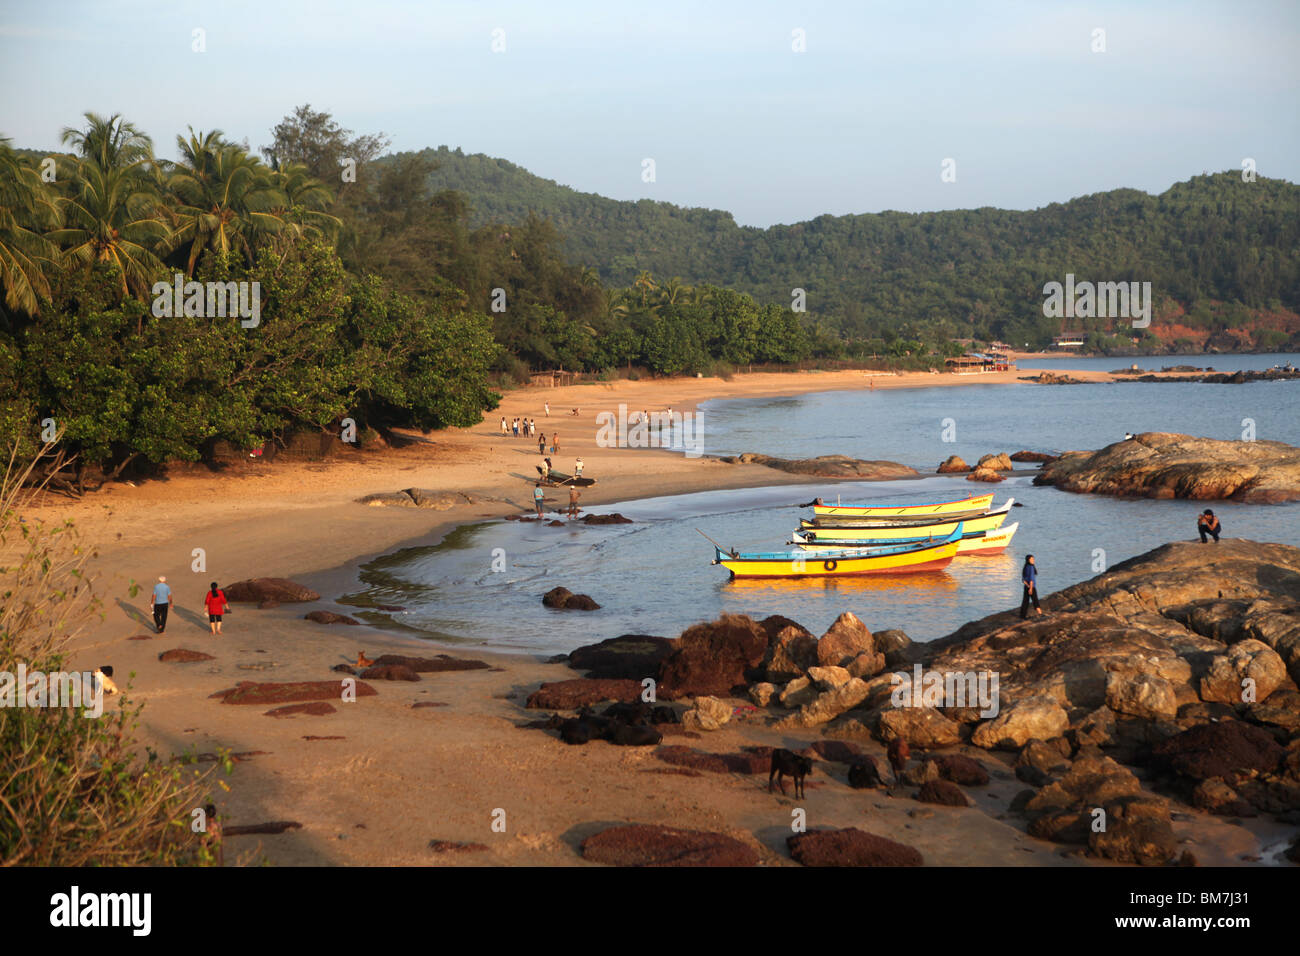 Om Beach, named for the beaches similar shape to Indias Om symbol, south of Gokana Town, Karnataka, India. Stock Photo